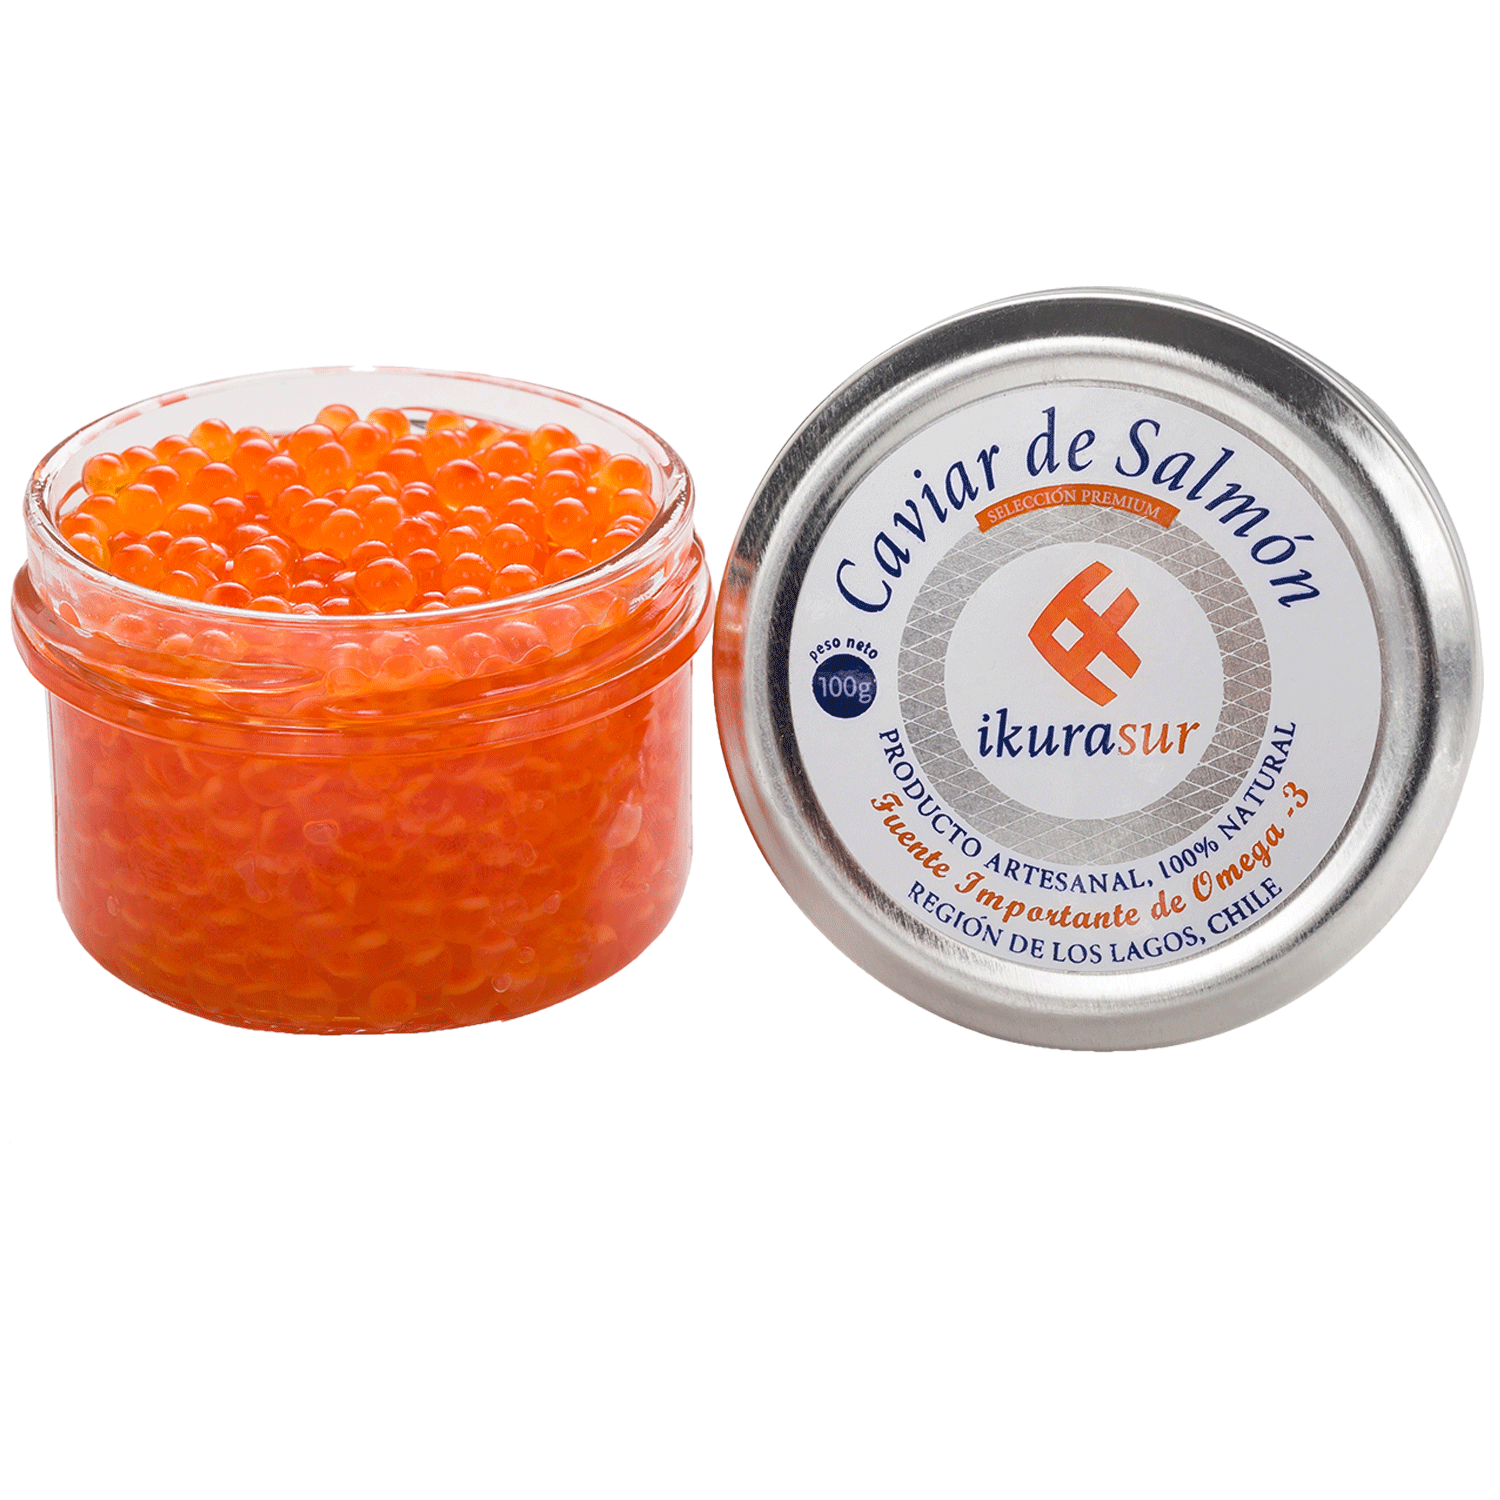 Deformar Escudriñar Temporada Caviar rojo de salmón Ikurasur 100 g | Jumbo.cl